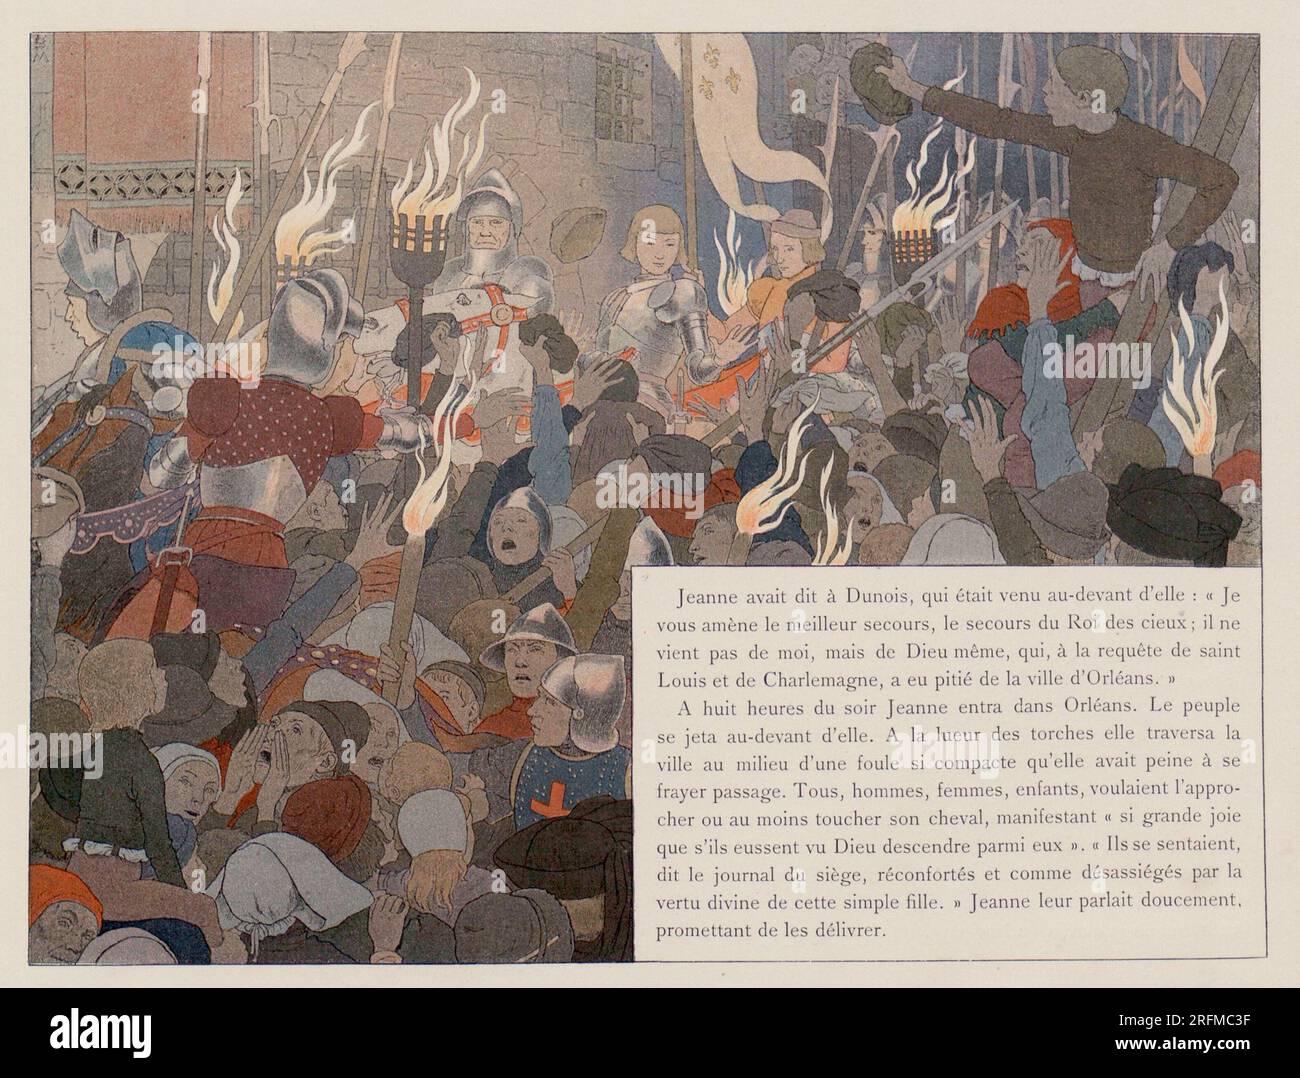 Um acht Uhr abends betrat Jeanne Orléans. Die Leute eilten, um sie zu treffen." Illustration veröffentlicht im Buch „Jeanne d'Arc“ von Louis-Maurice Boutet de Monvel, veröffentlicht von Plon, Nourrit & Cie im Jahr 1896. Stockfoto